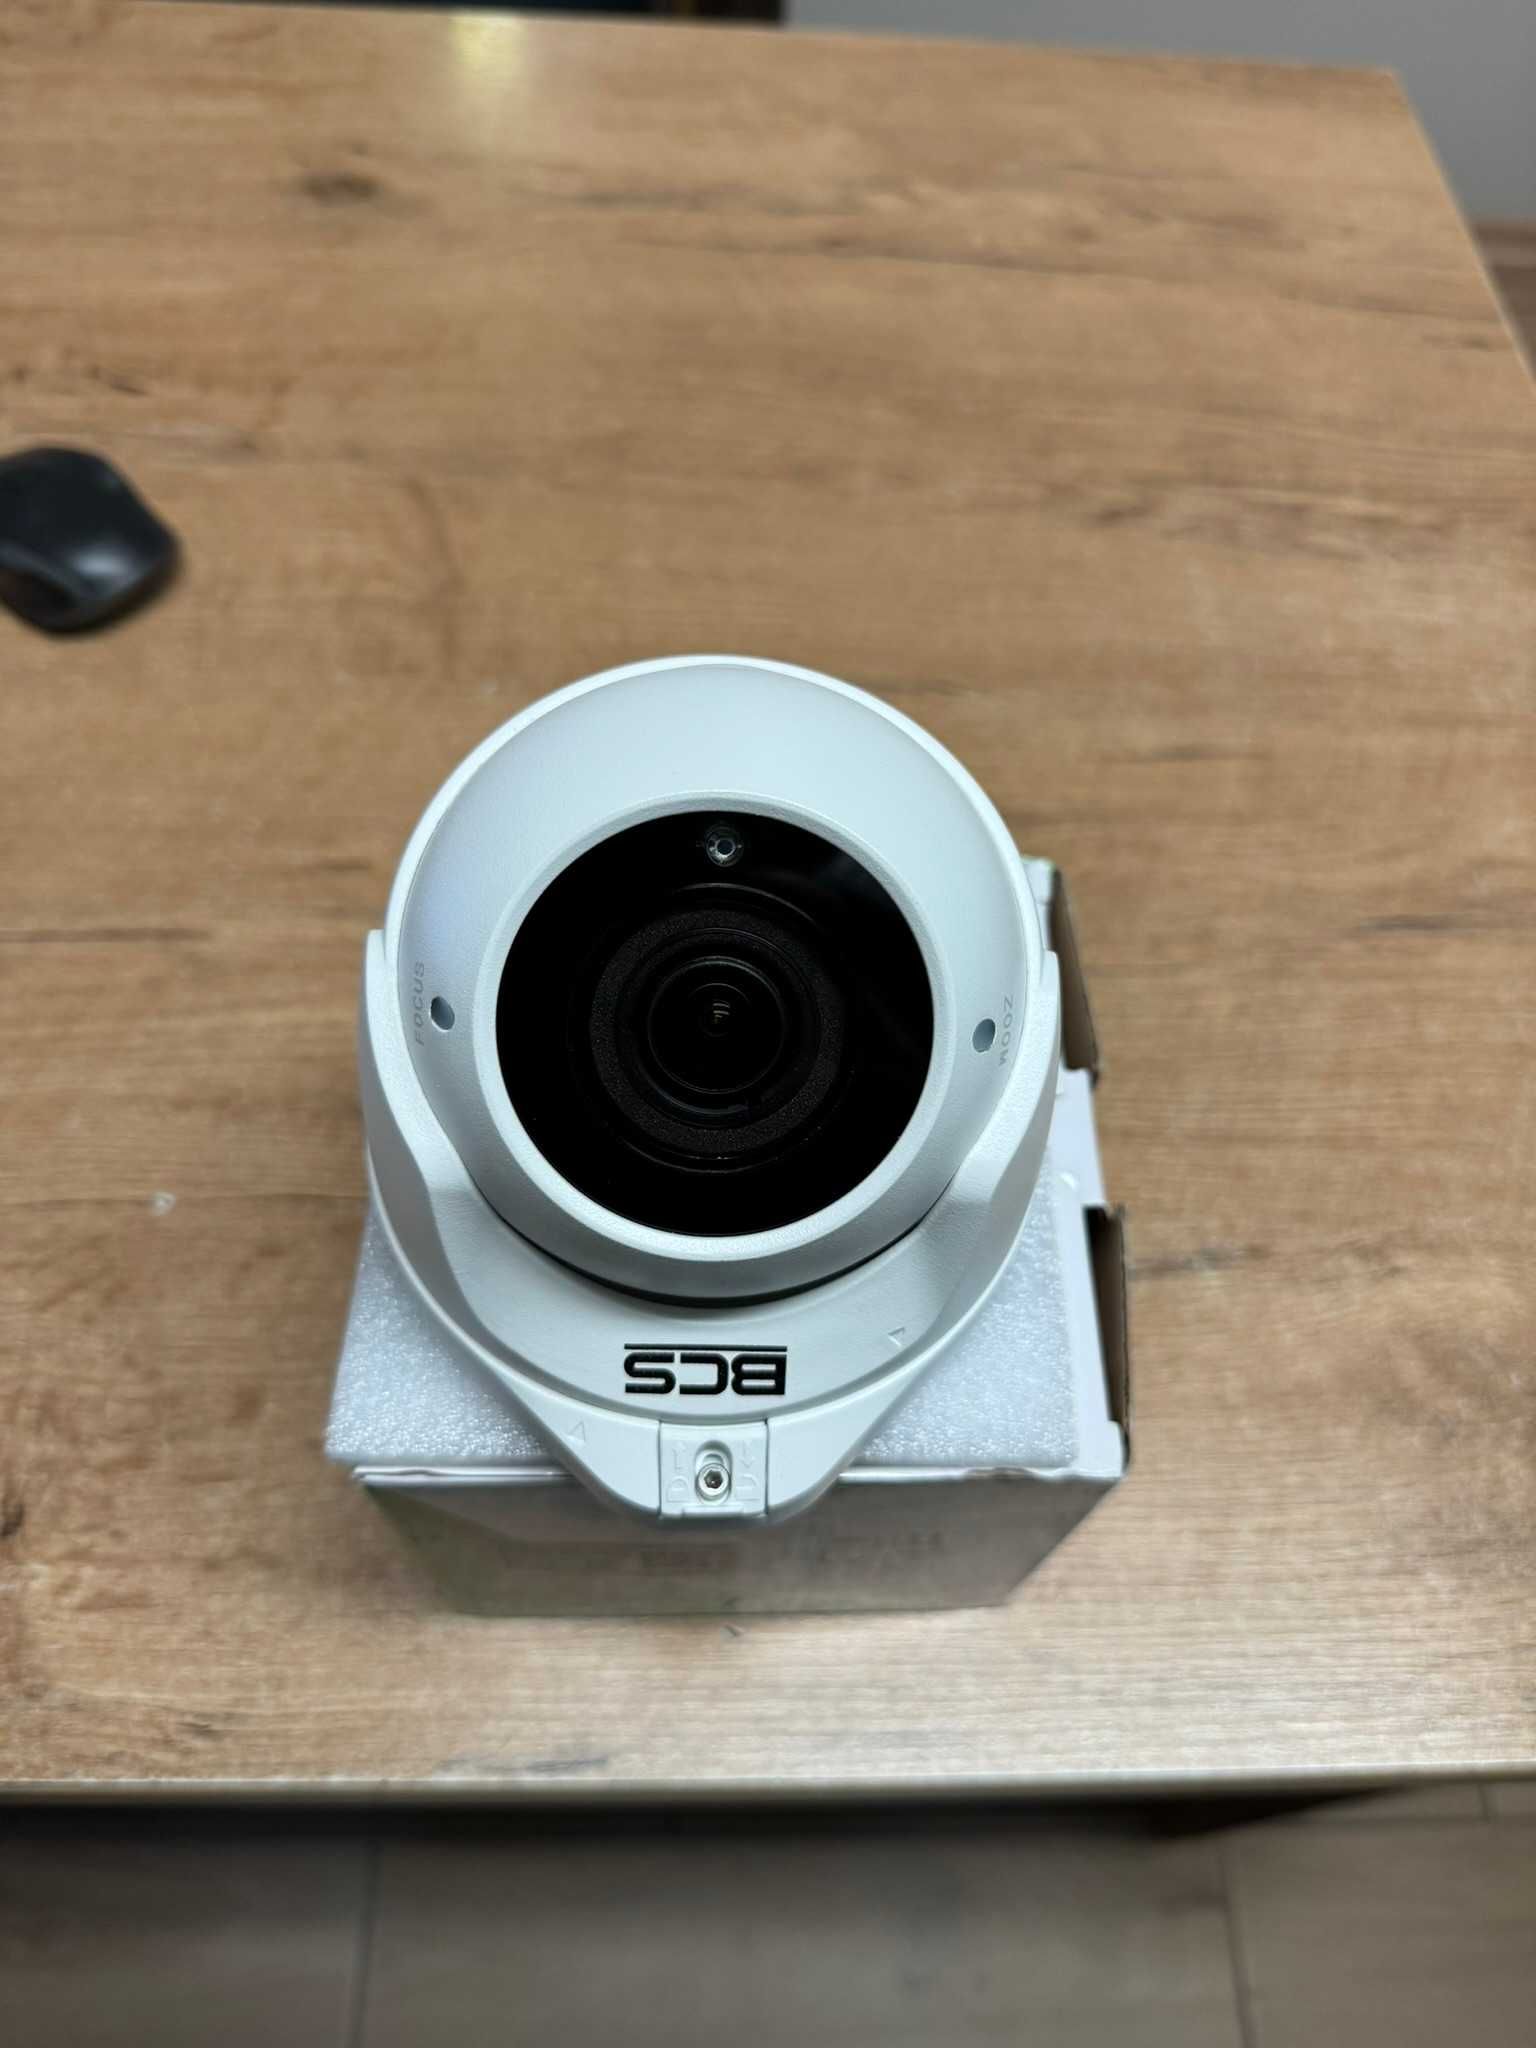 Kamera BCS-DMQE3500IR3-B(II) 5MPX